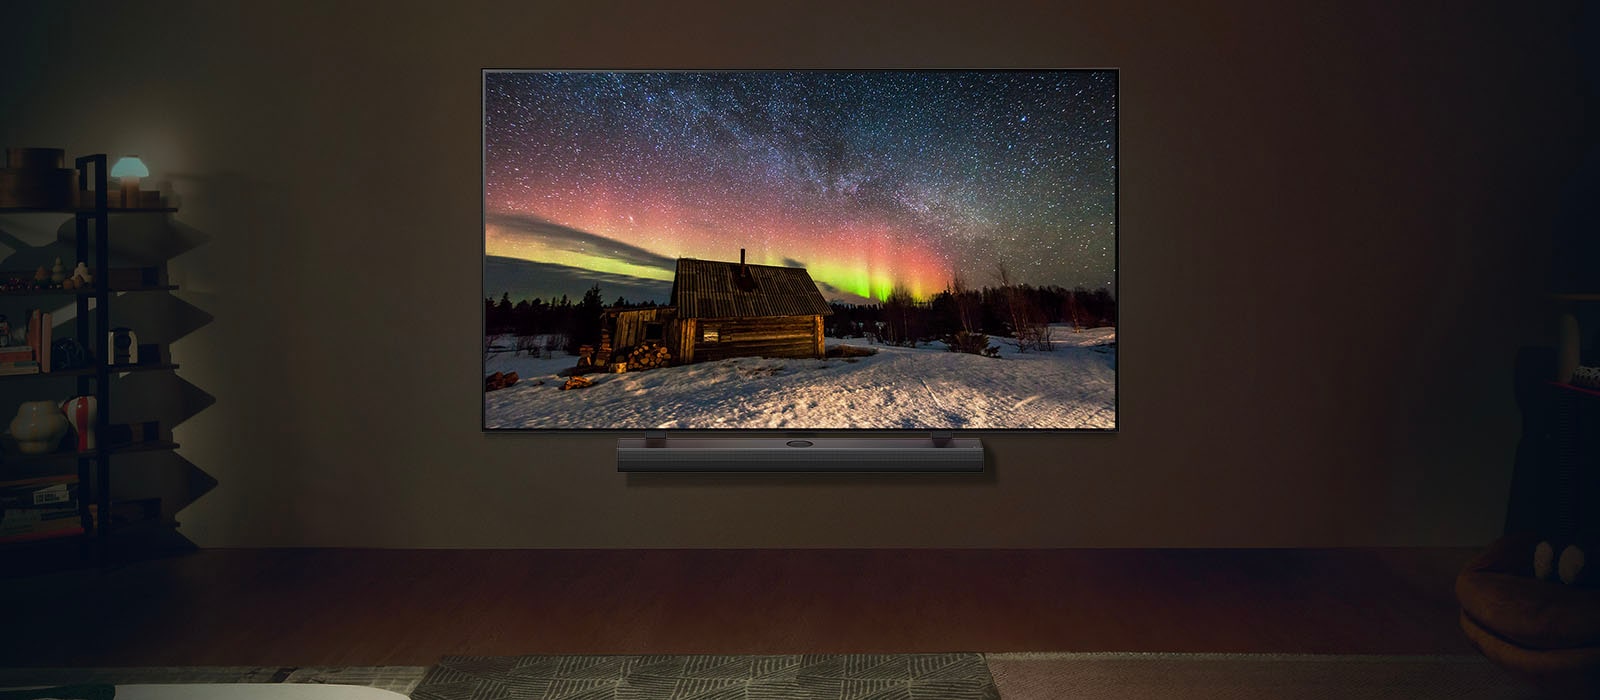 LG TV ו-LG Soundbar בחלל מגורים מודרני בשעות הלילה. תמונת הזוהר הצפוני שעל המסך מוצגת ברמת הבהירות האופטימלית.